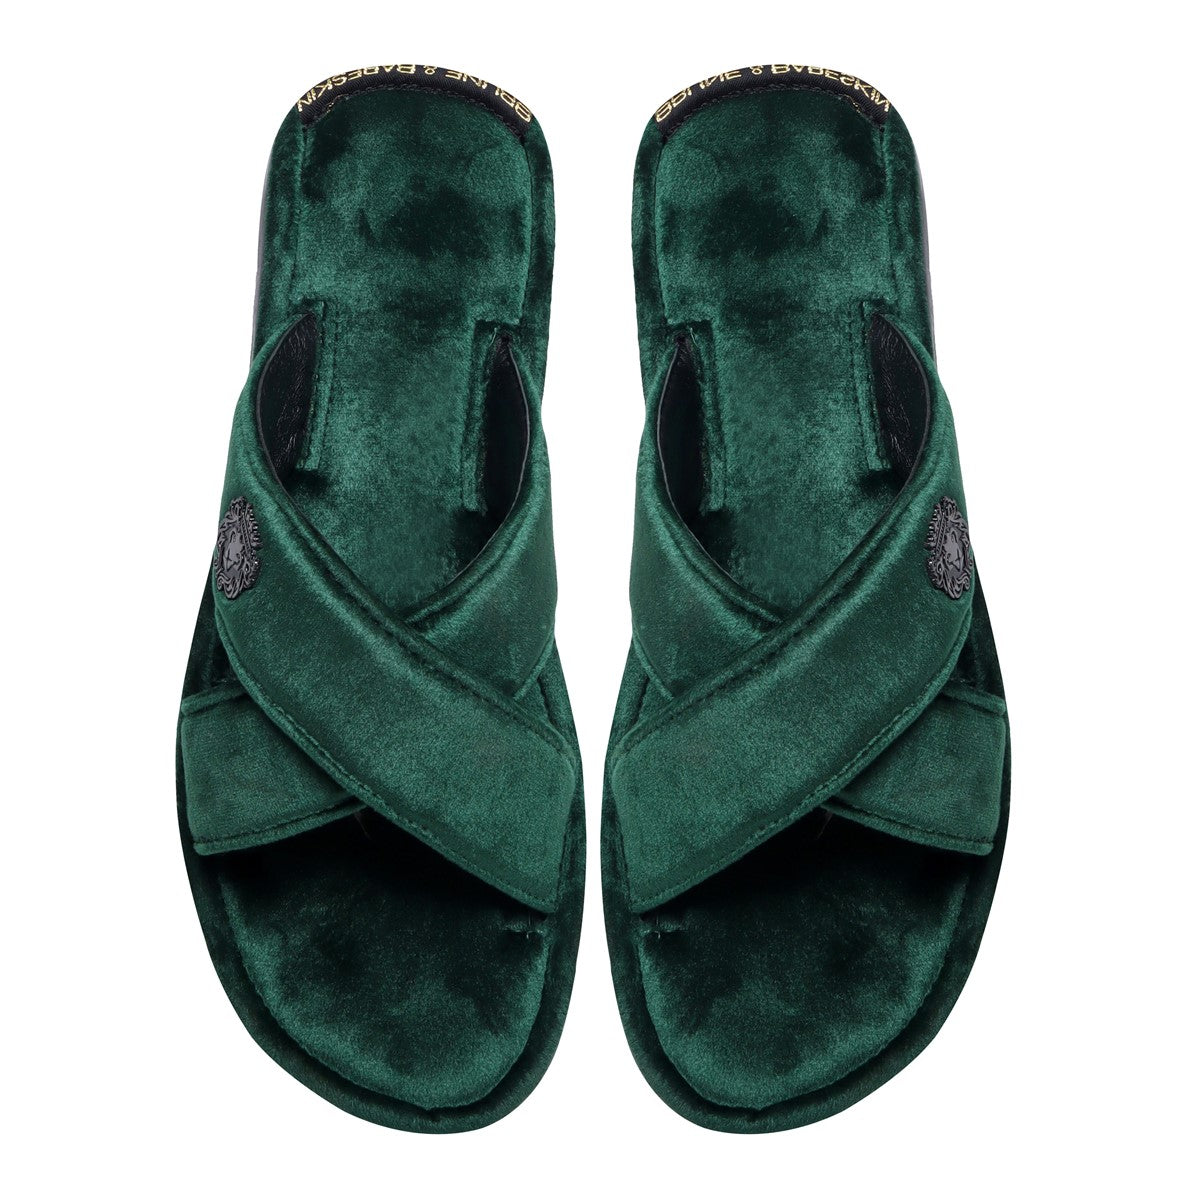 Green Cross Straps Comfy Velvet Slide-in Slippers By Brune & Bareskin